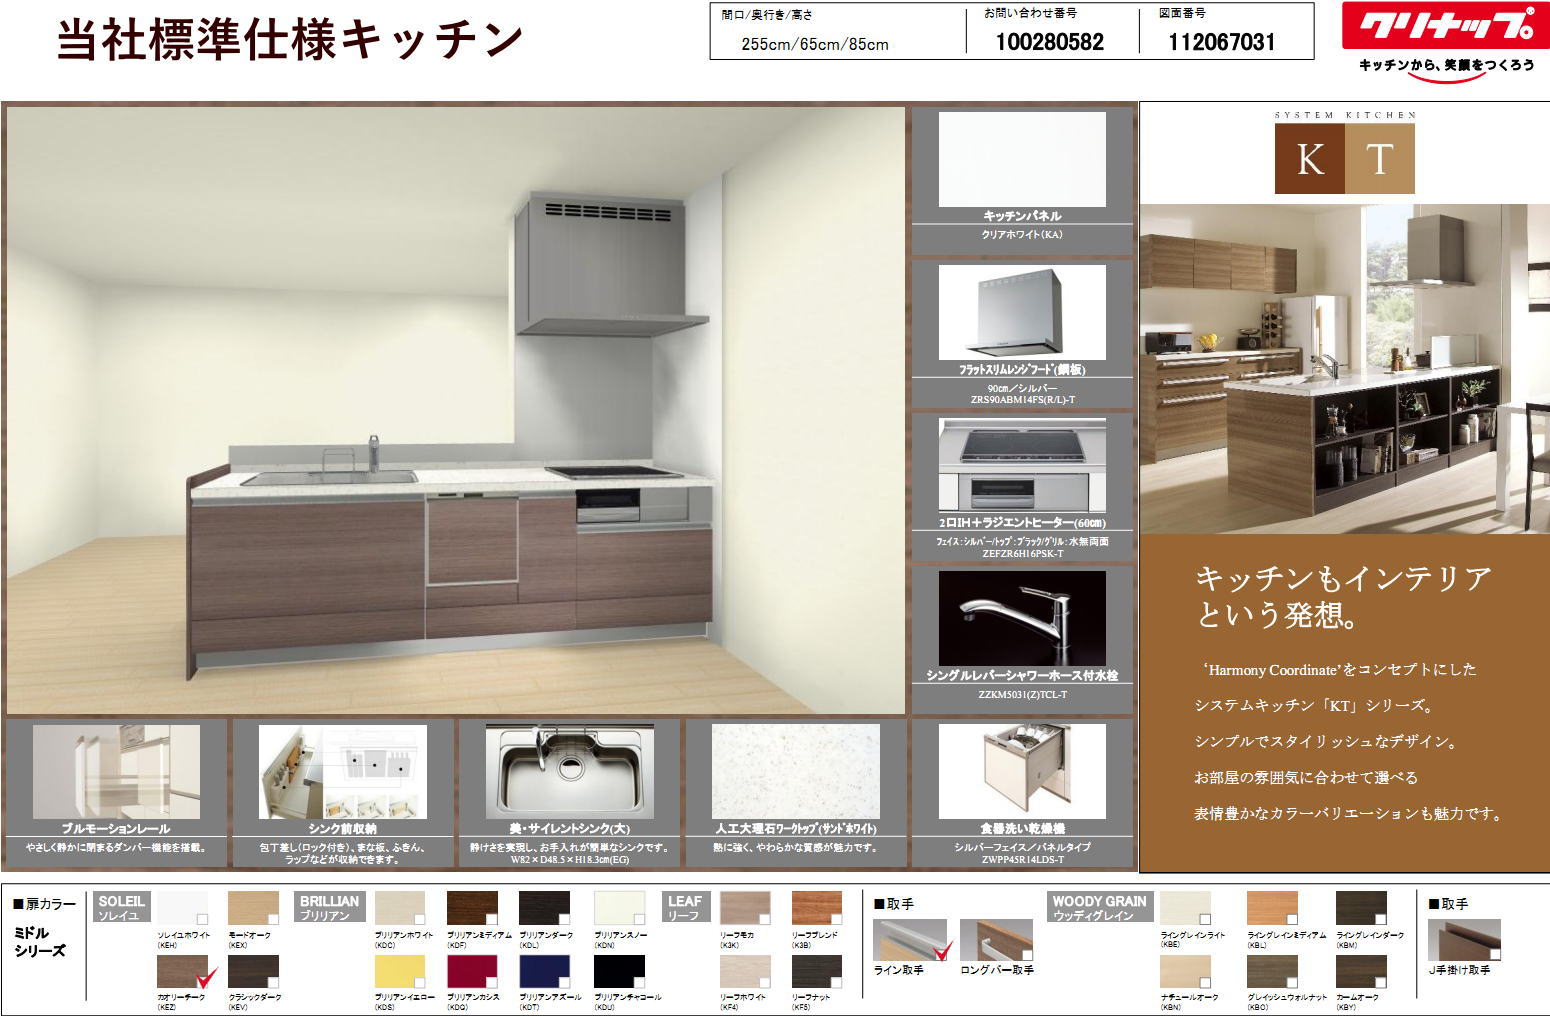 キッチンリフォーム実例集 新築住宅・リフォームのことなら京都府亀岡